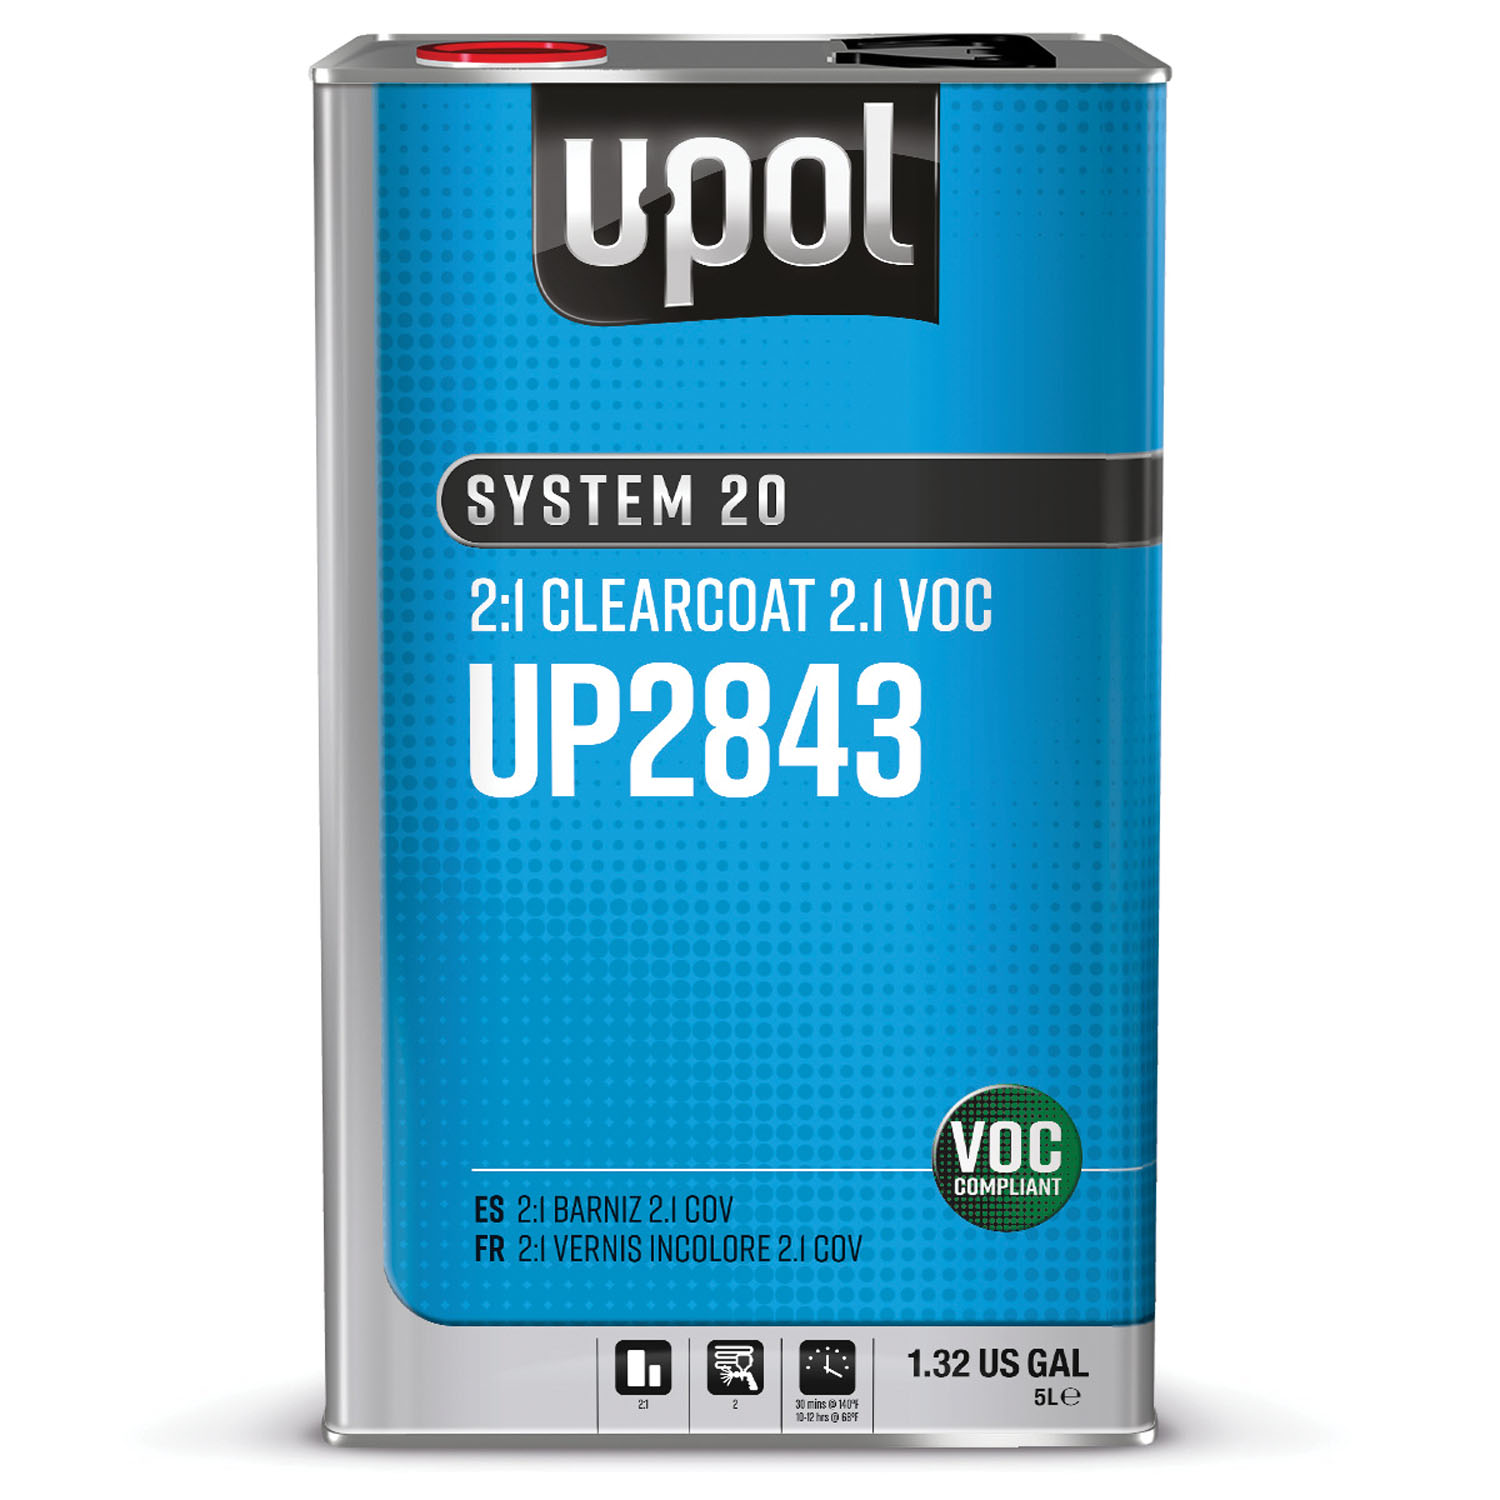 U-POL Prod 2.1 VOC HS CLEAR 2-1 5L UP2843